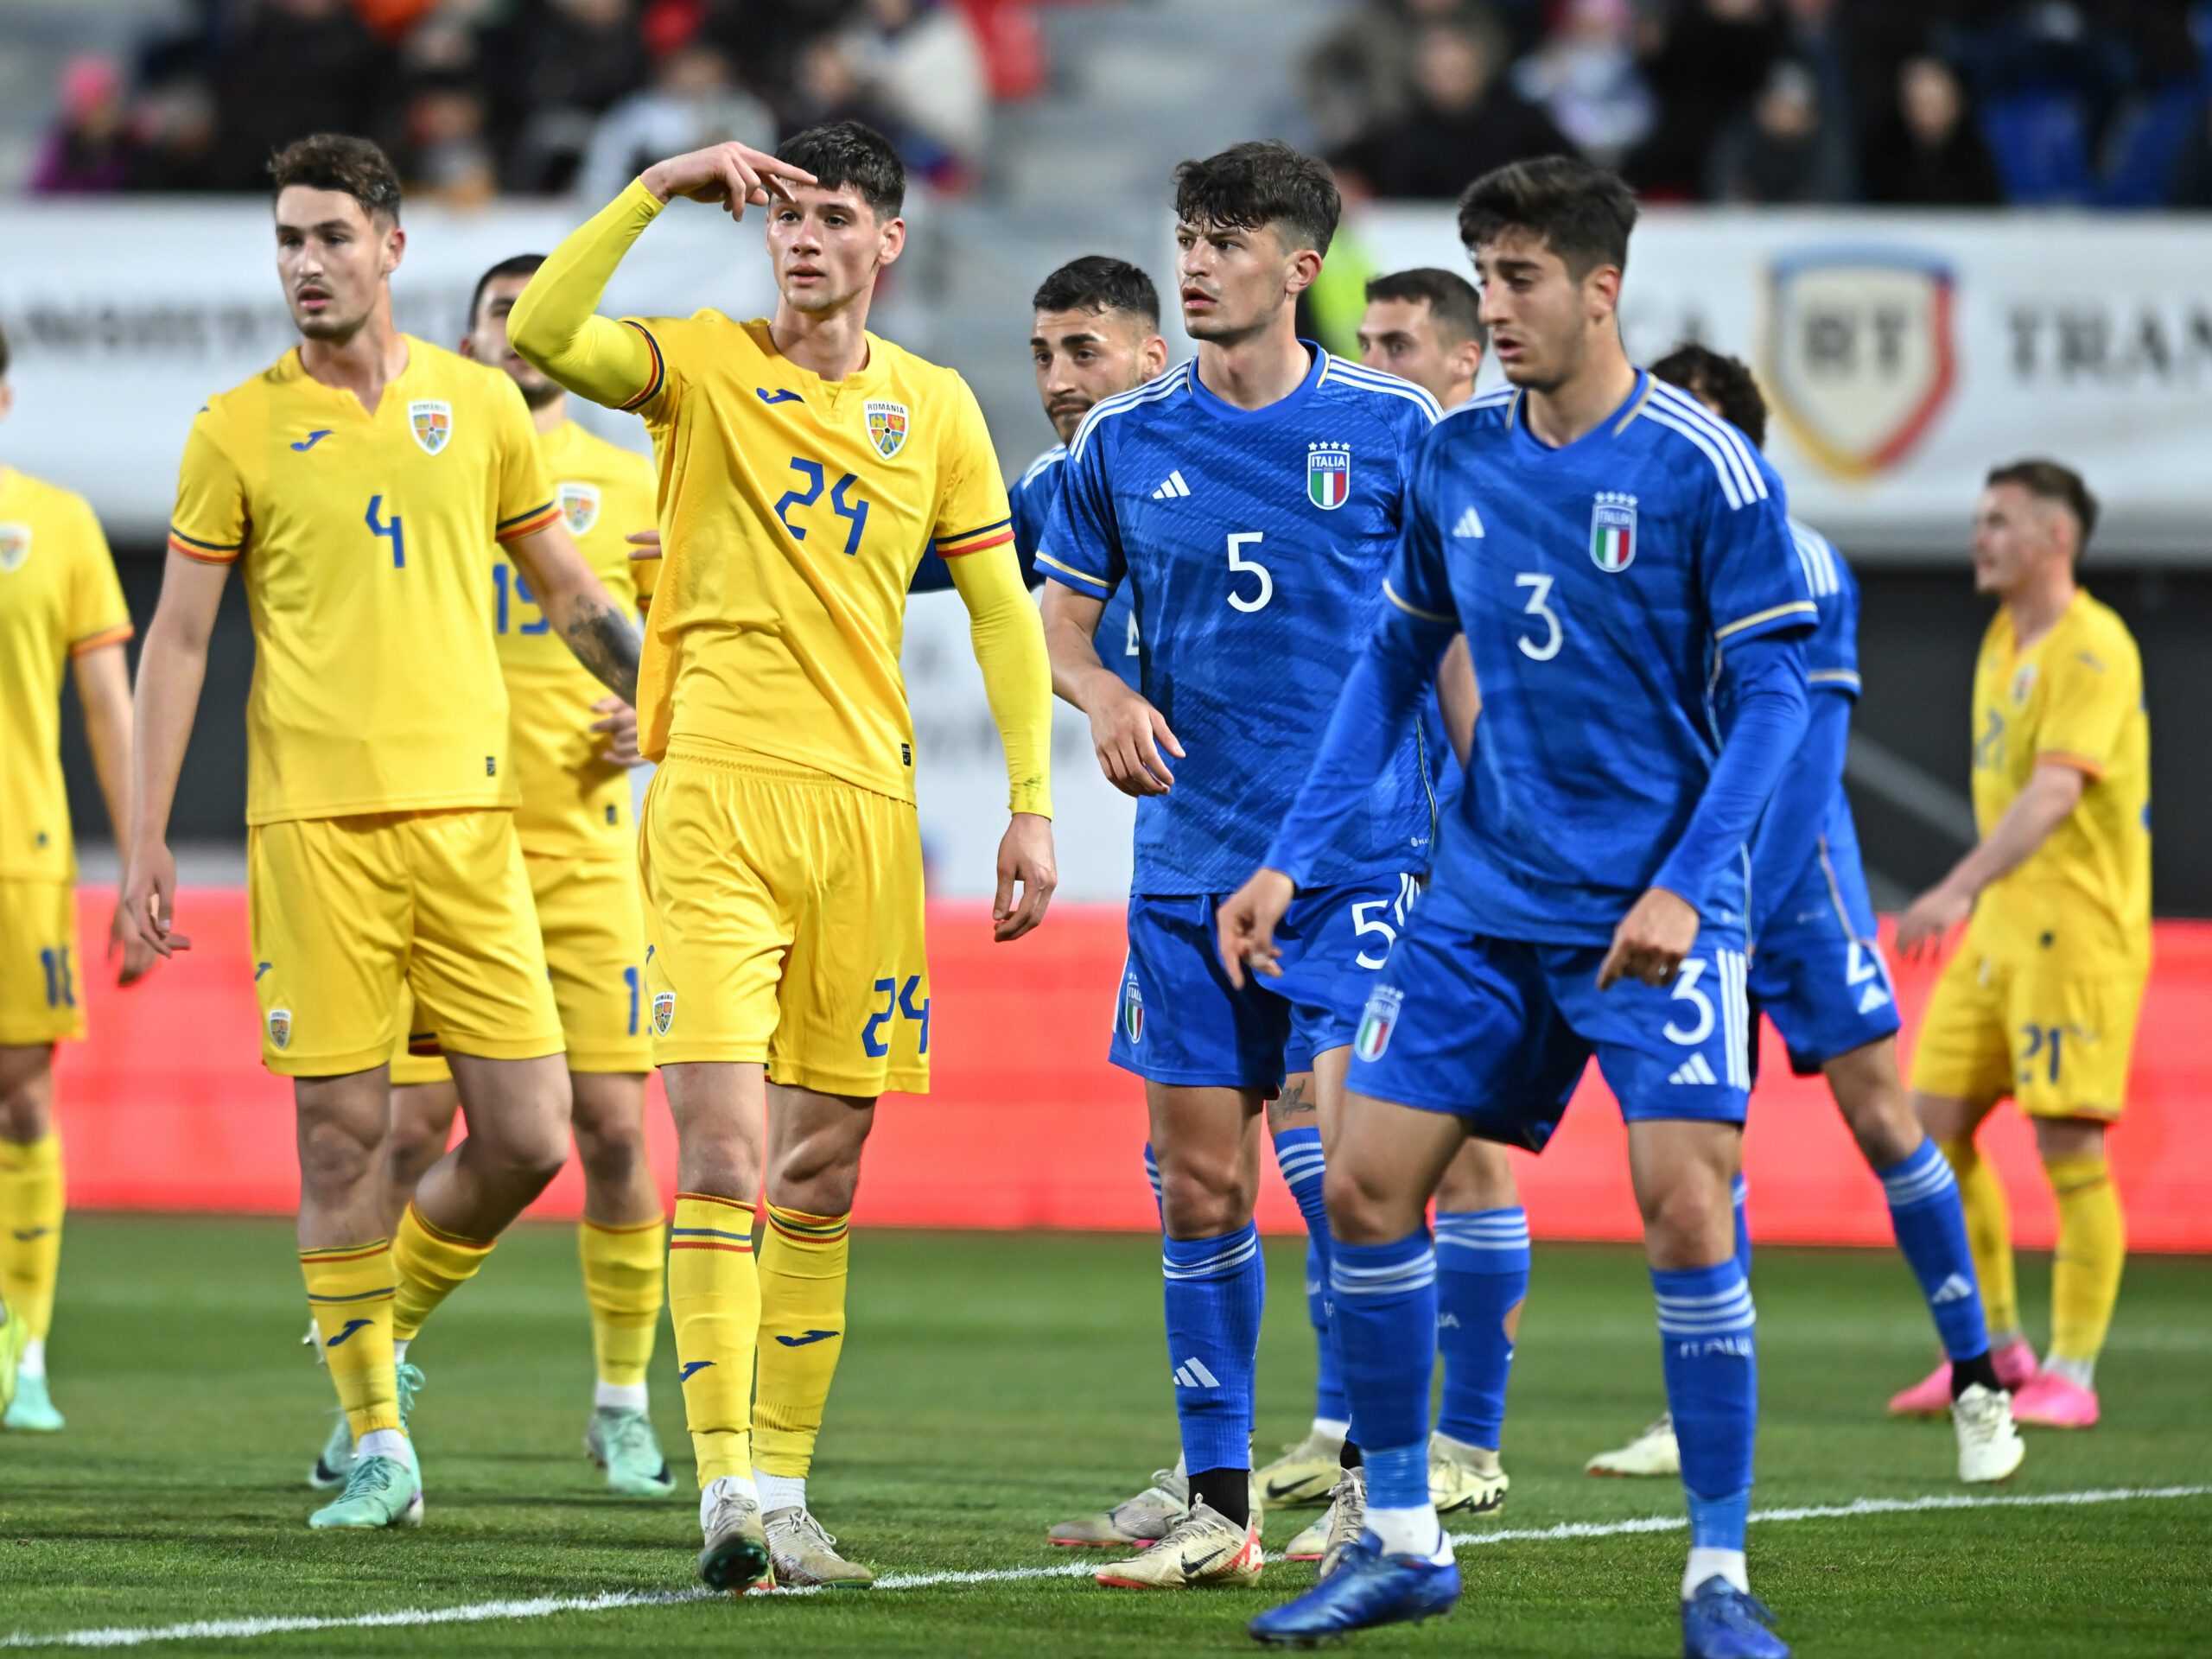 România U20 a remizat, scor 0-0, cu reprezentativa similară a Italiei - romania-egal-1711113895.jpg